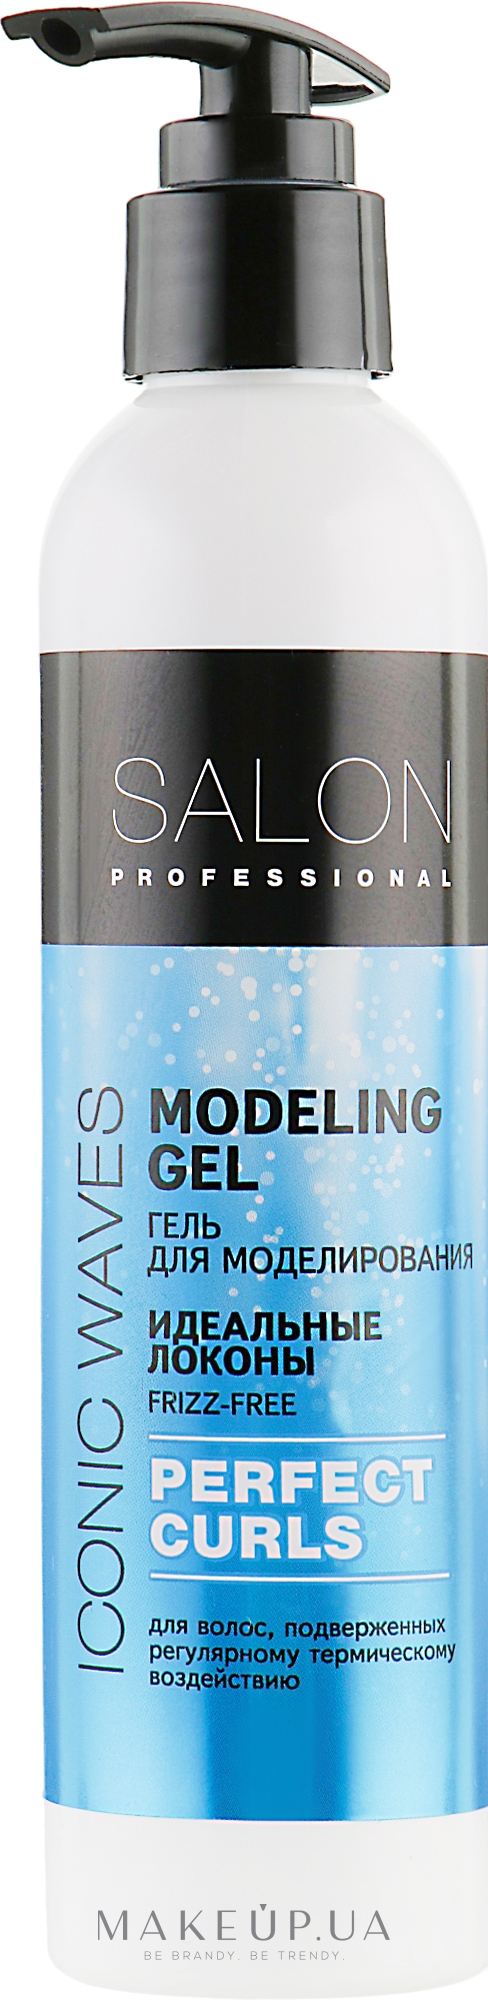 Гель для моделювання локонів "Ідеальні локони" - Salon Professional Modeling Gel Perfect Curls — фото 200ml